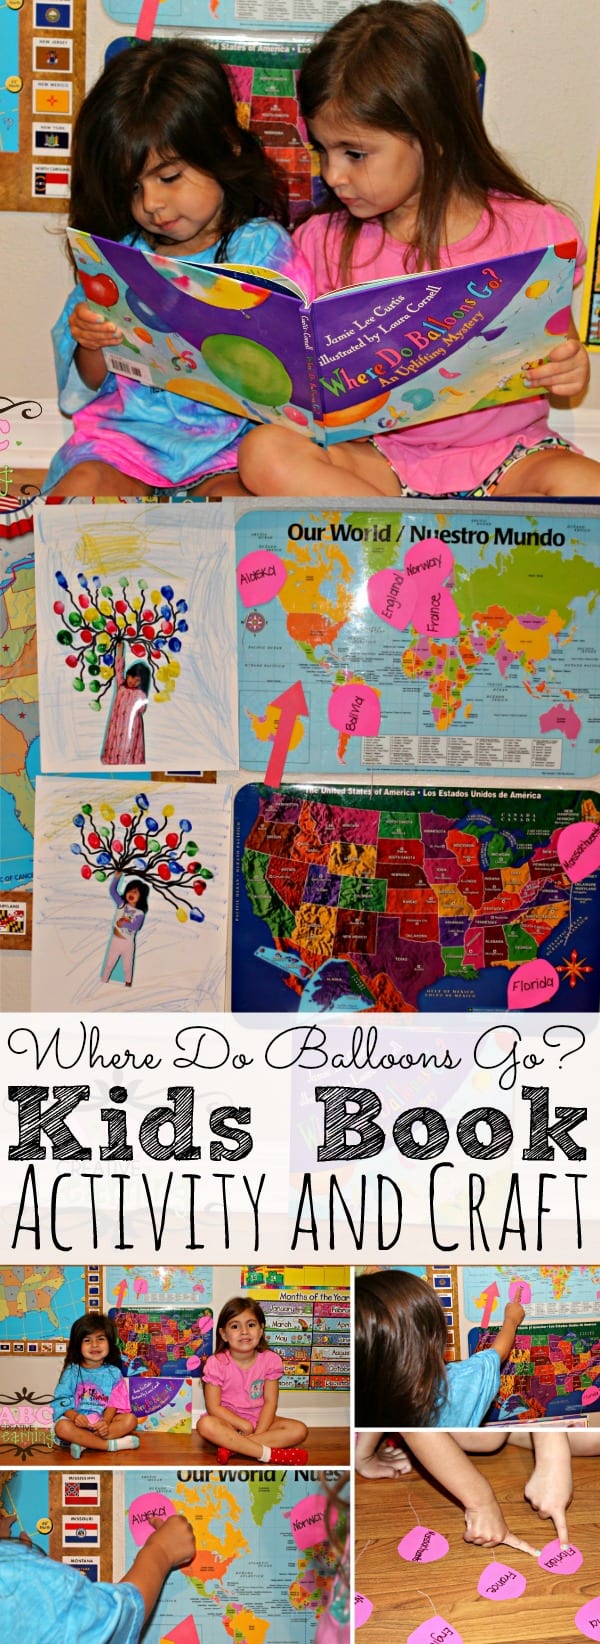 Where Do Balloons Go? Book Activity